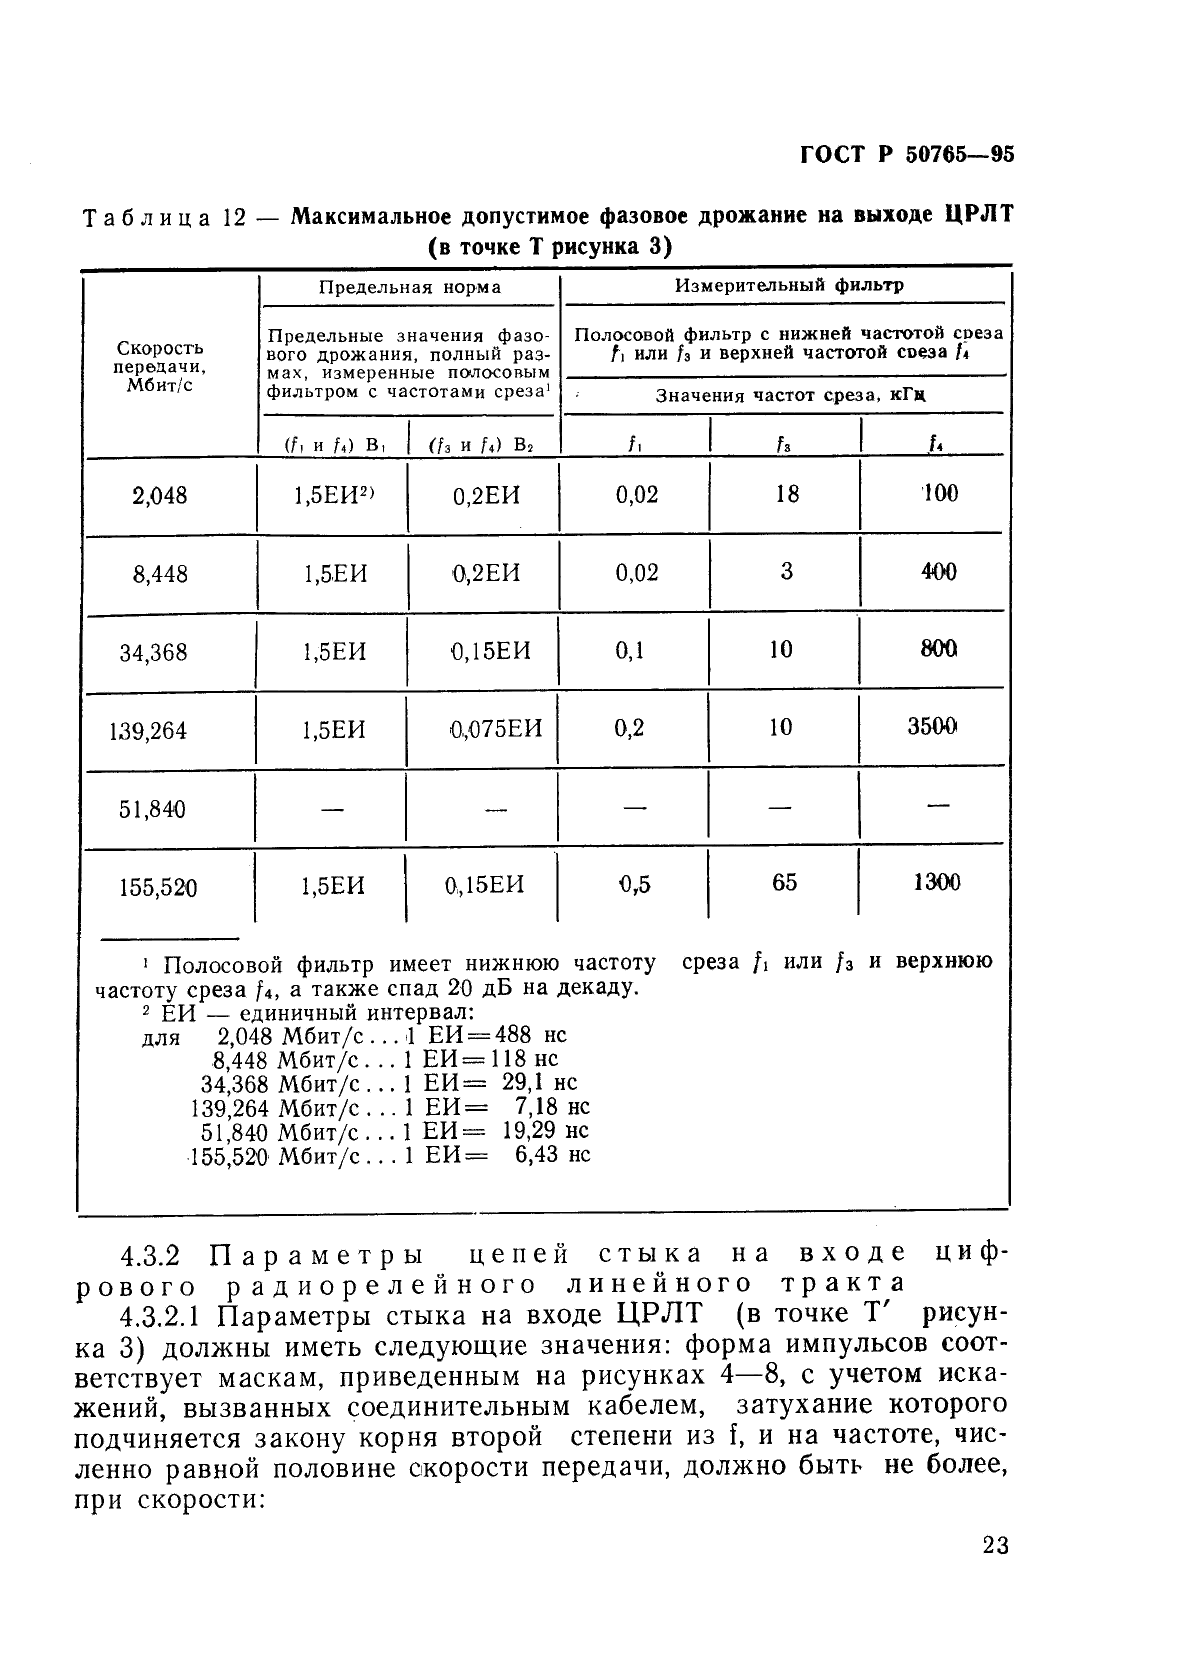 ГОСТ Р 50765-95 Аппаратура радиорелейная. Классификация. Основные параметры цепей стыка (фото 26 из 62)